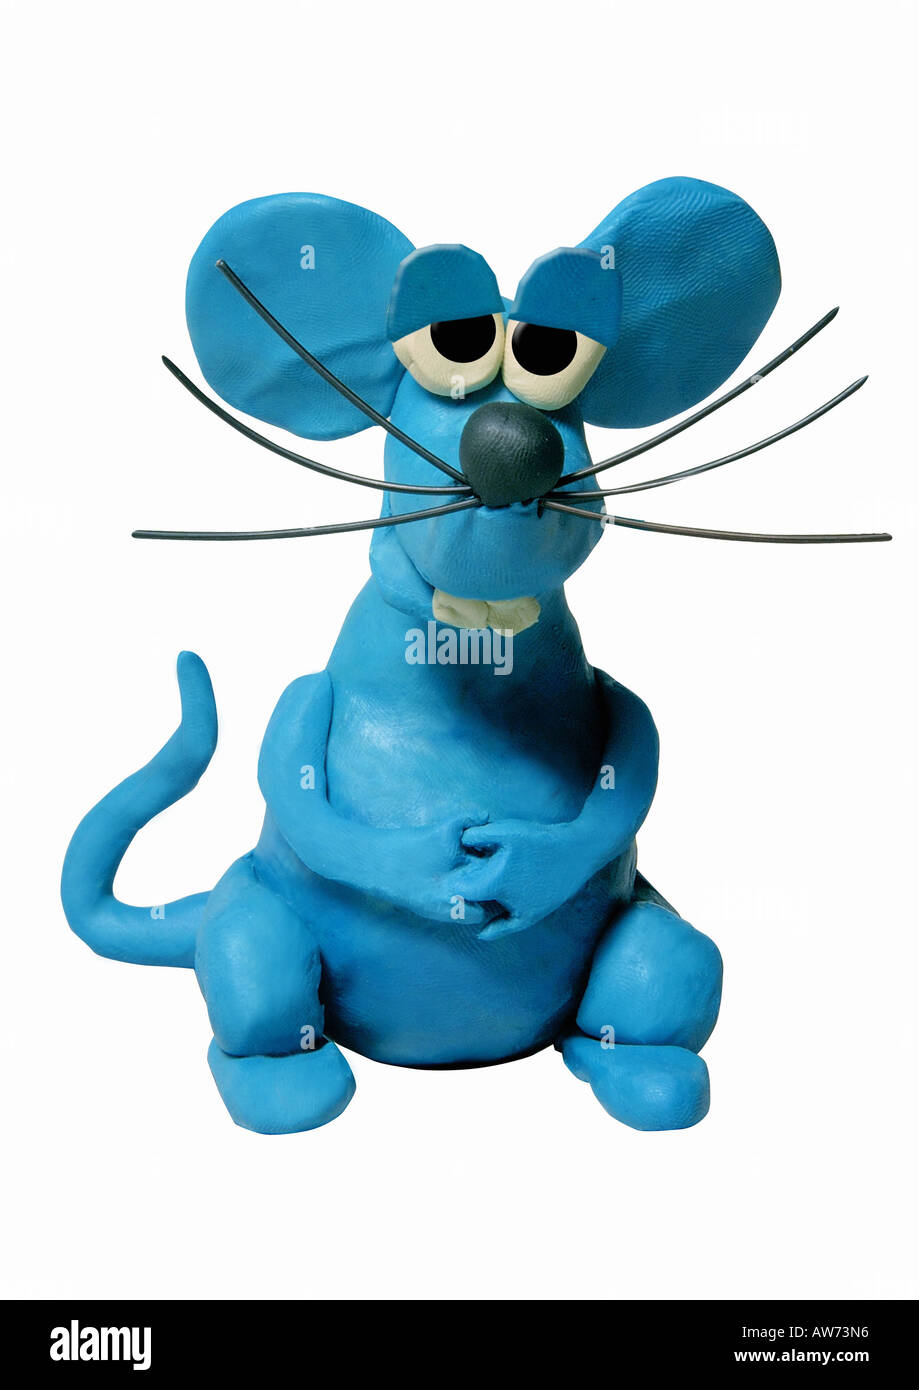 La souris bleue avec de grandes moustaches Photo Stock - Alamy